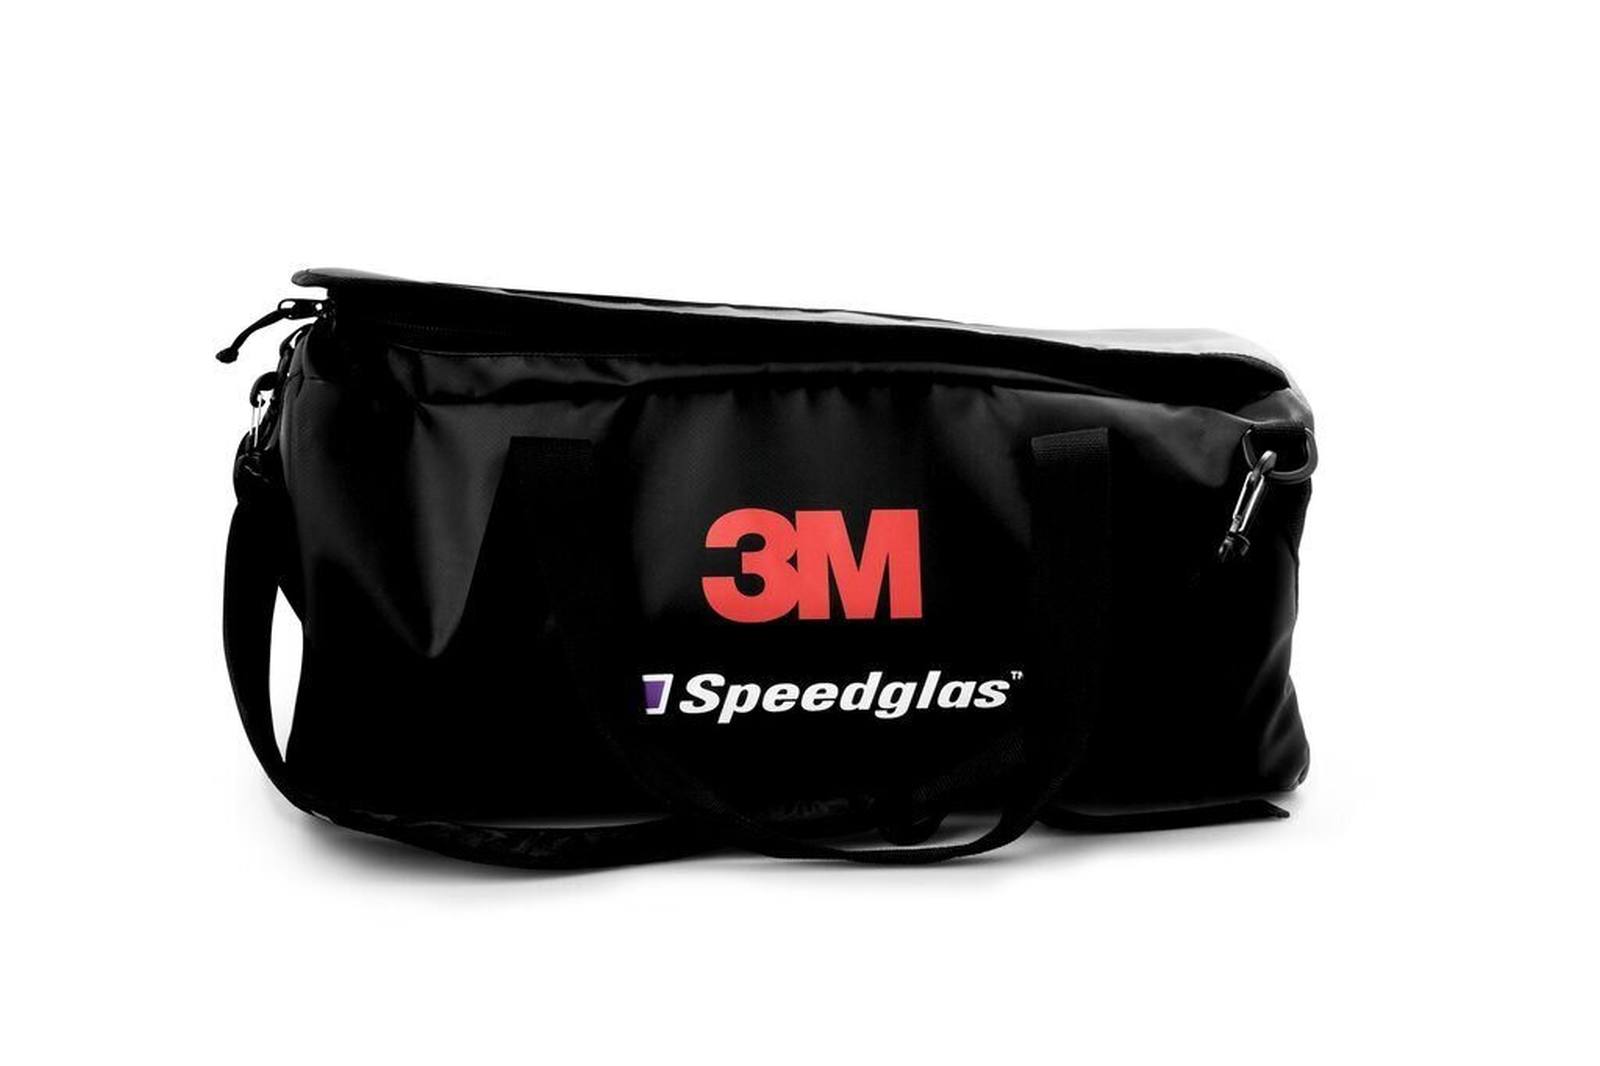 3M Speedglas bolsa de almacenamiento Generación 5, H790105